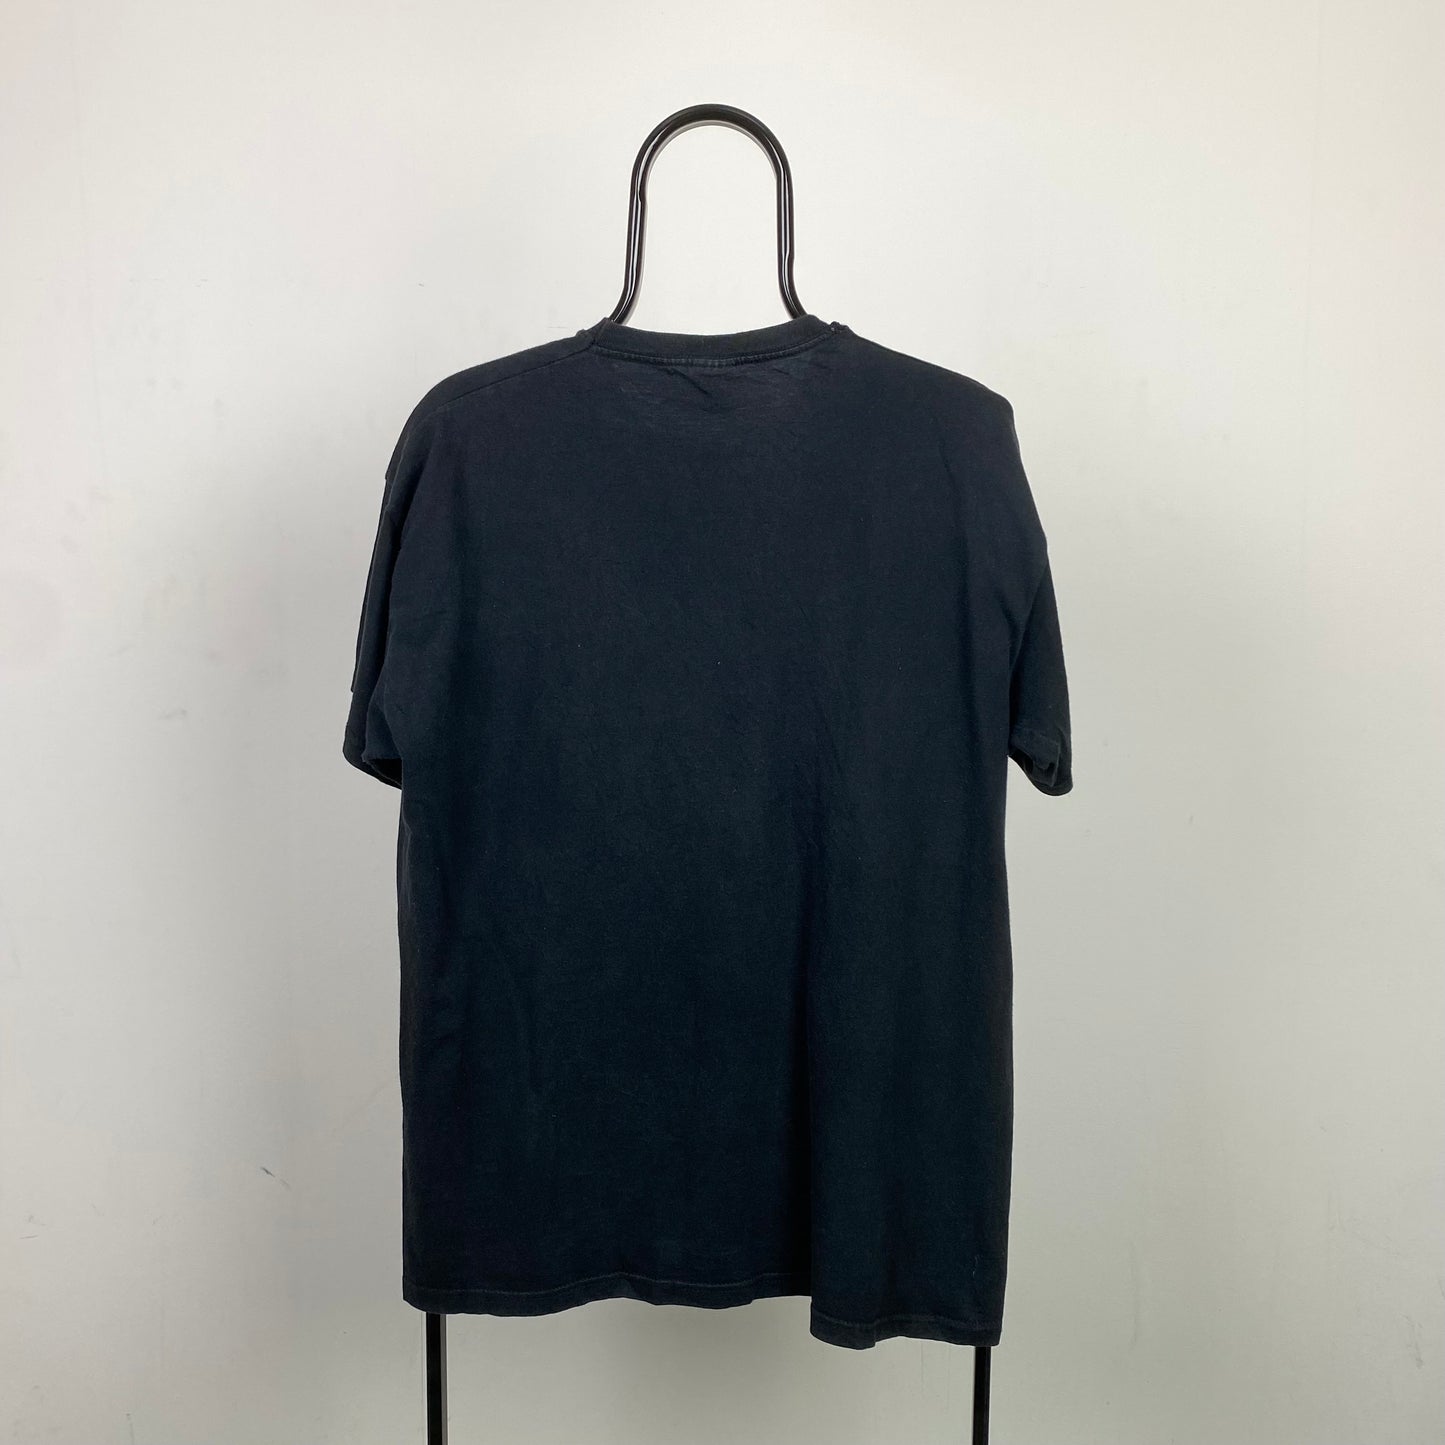 Retro 90s Pug T-Shirt Black Large